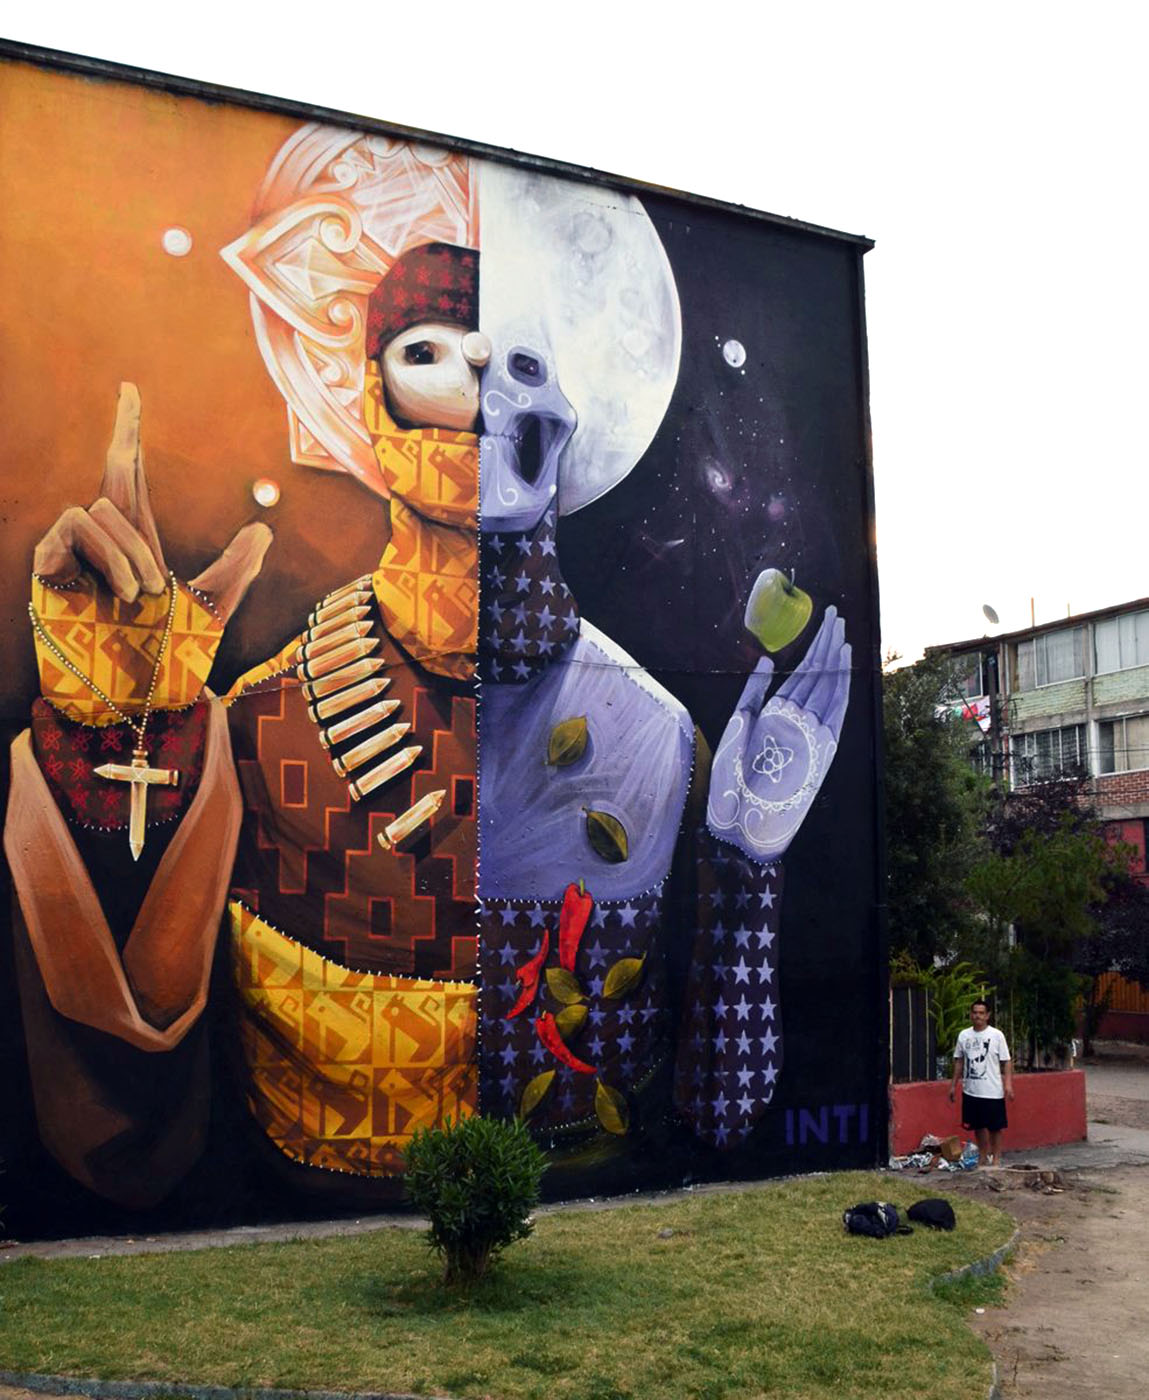 INTI New Mural In Santiago, Chile – StreetArtNews